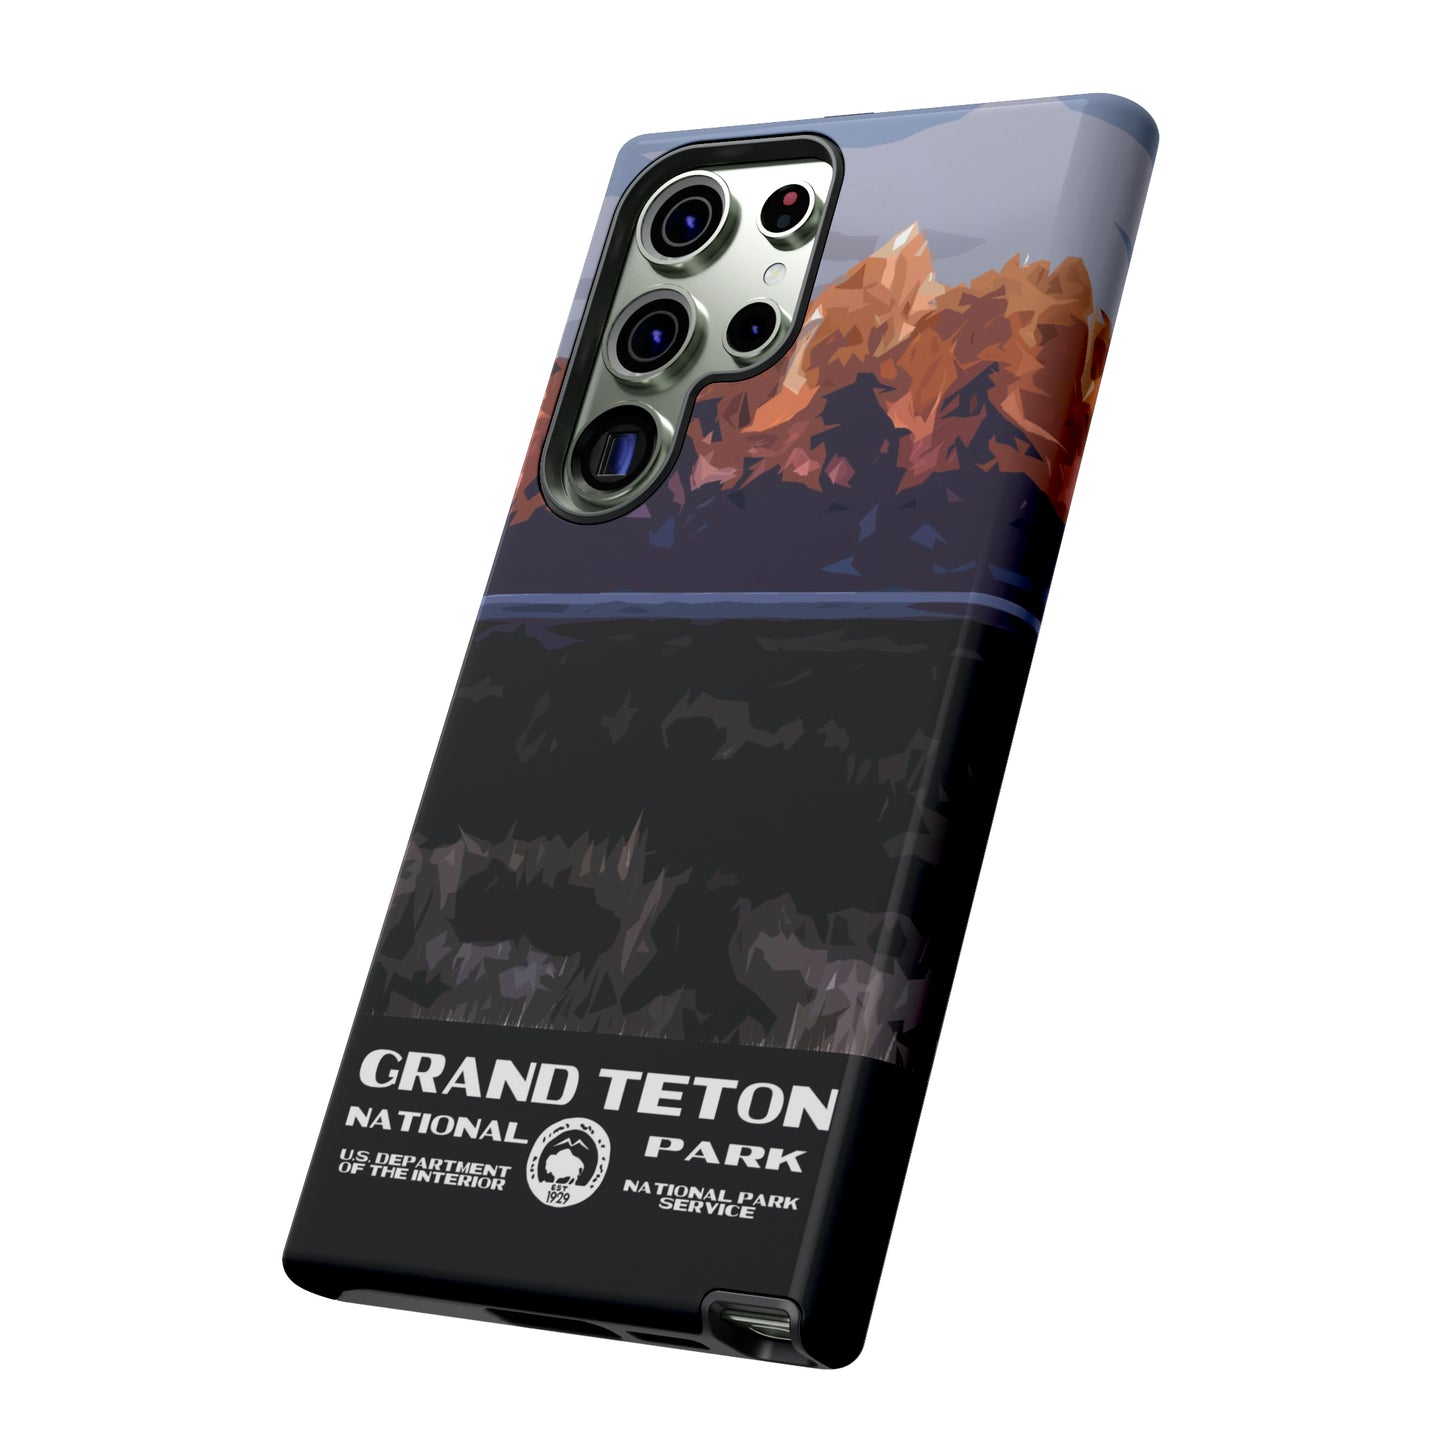 Grand Teton National Park Phone Case